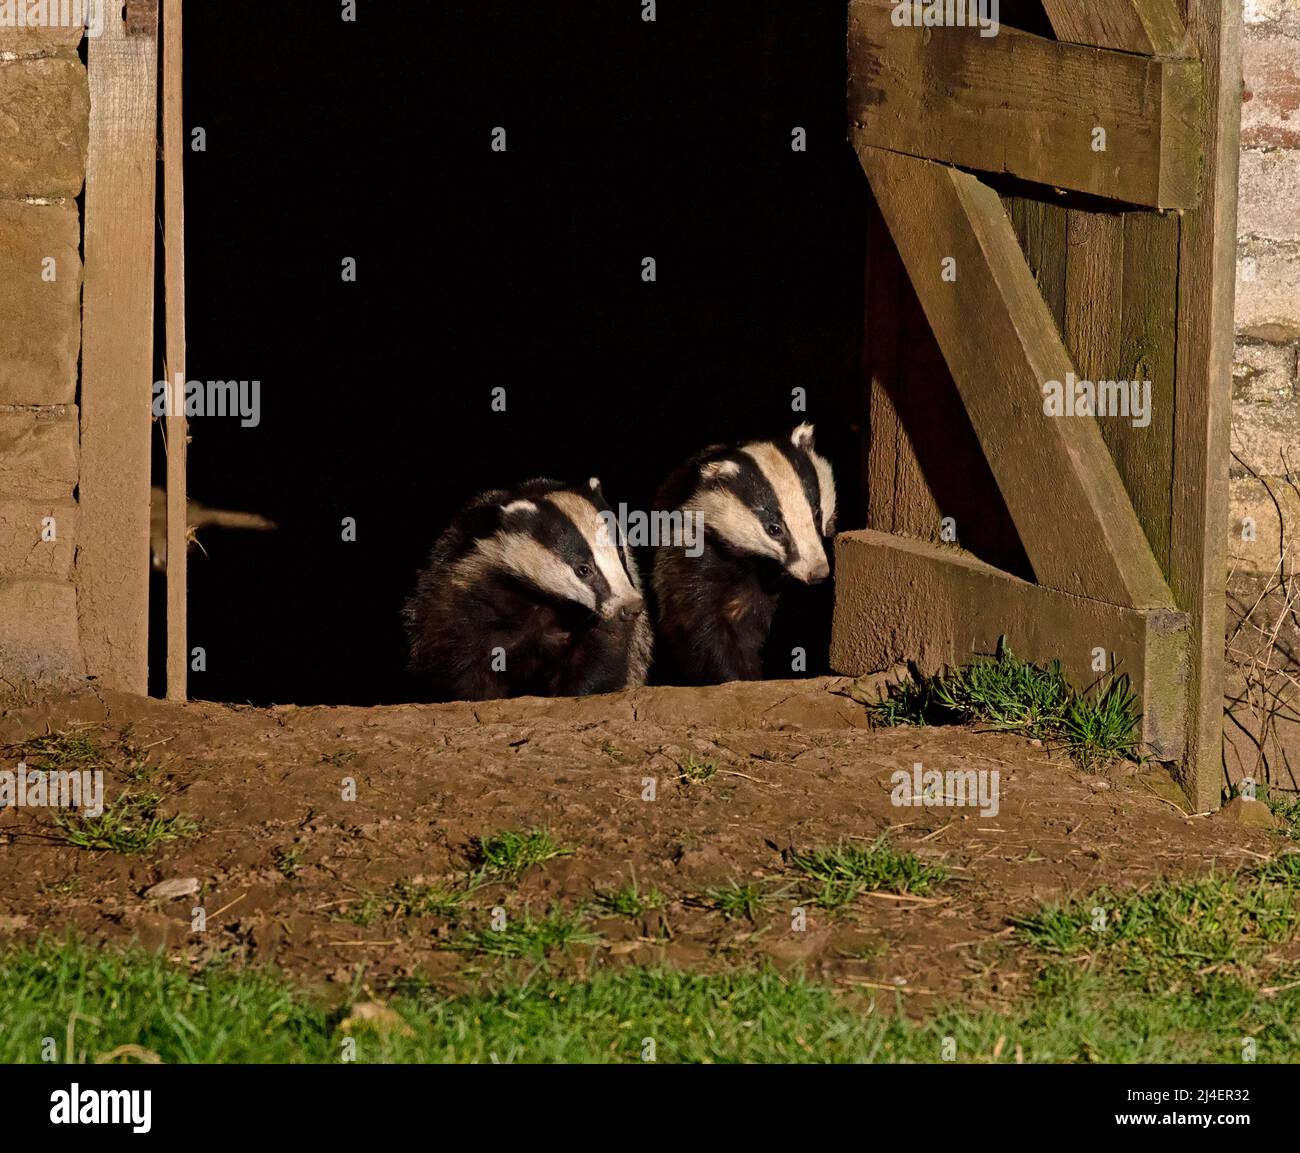 Badger européen, Meles meles. Une famille de blaireaux, cete, a un nid, un terreau, à l'intérieur d'une grange abandonnée à Wensleydale, dans le parc national de Yorkshire Dales. Deux mauvais Banque D'Images